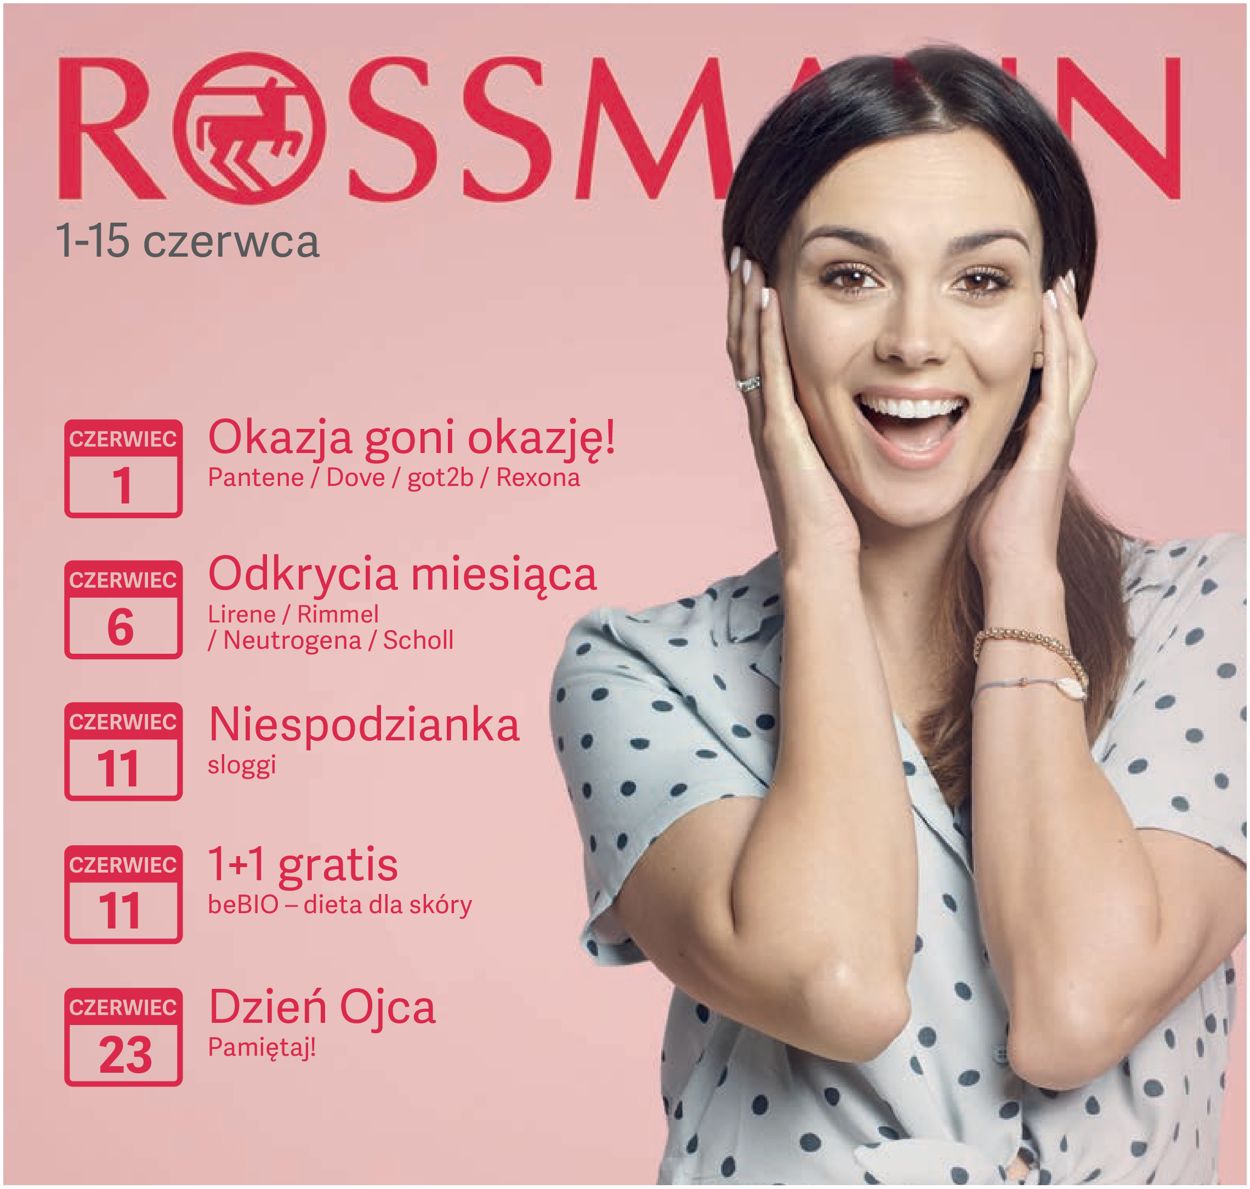 Rossmann Gazetka od 01.06.2019